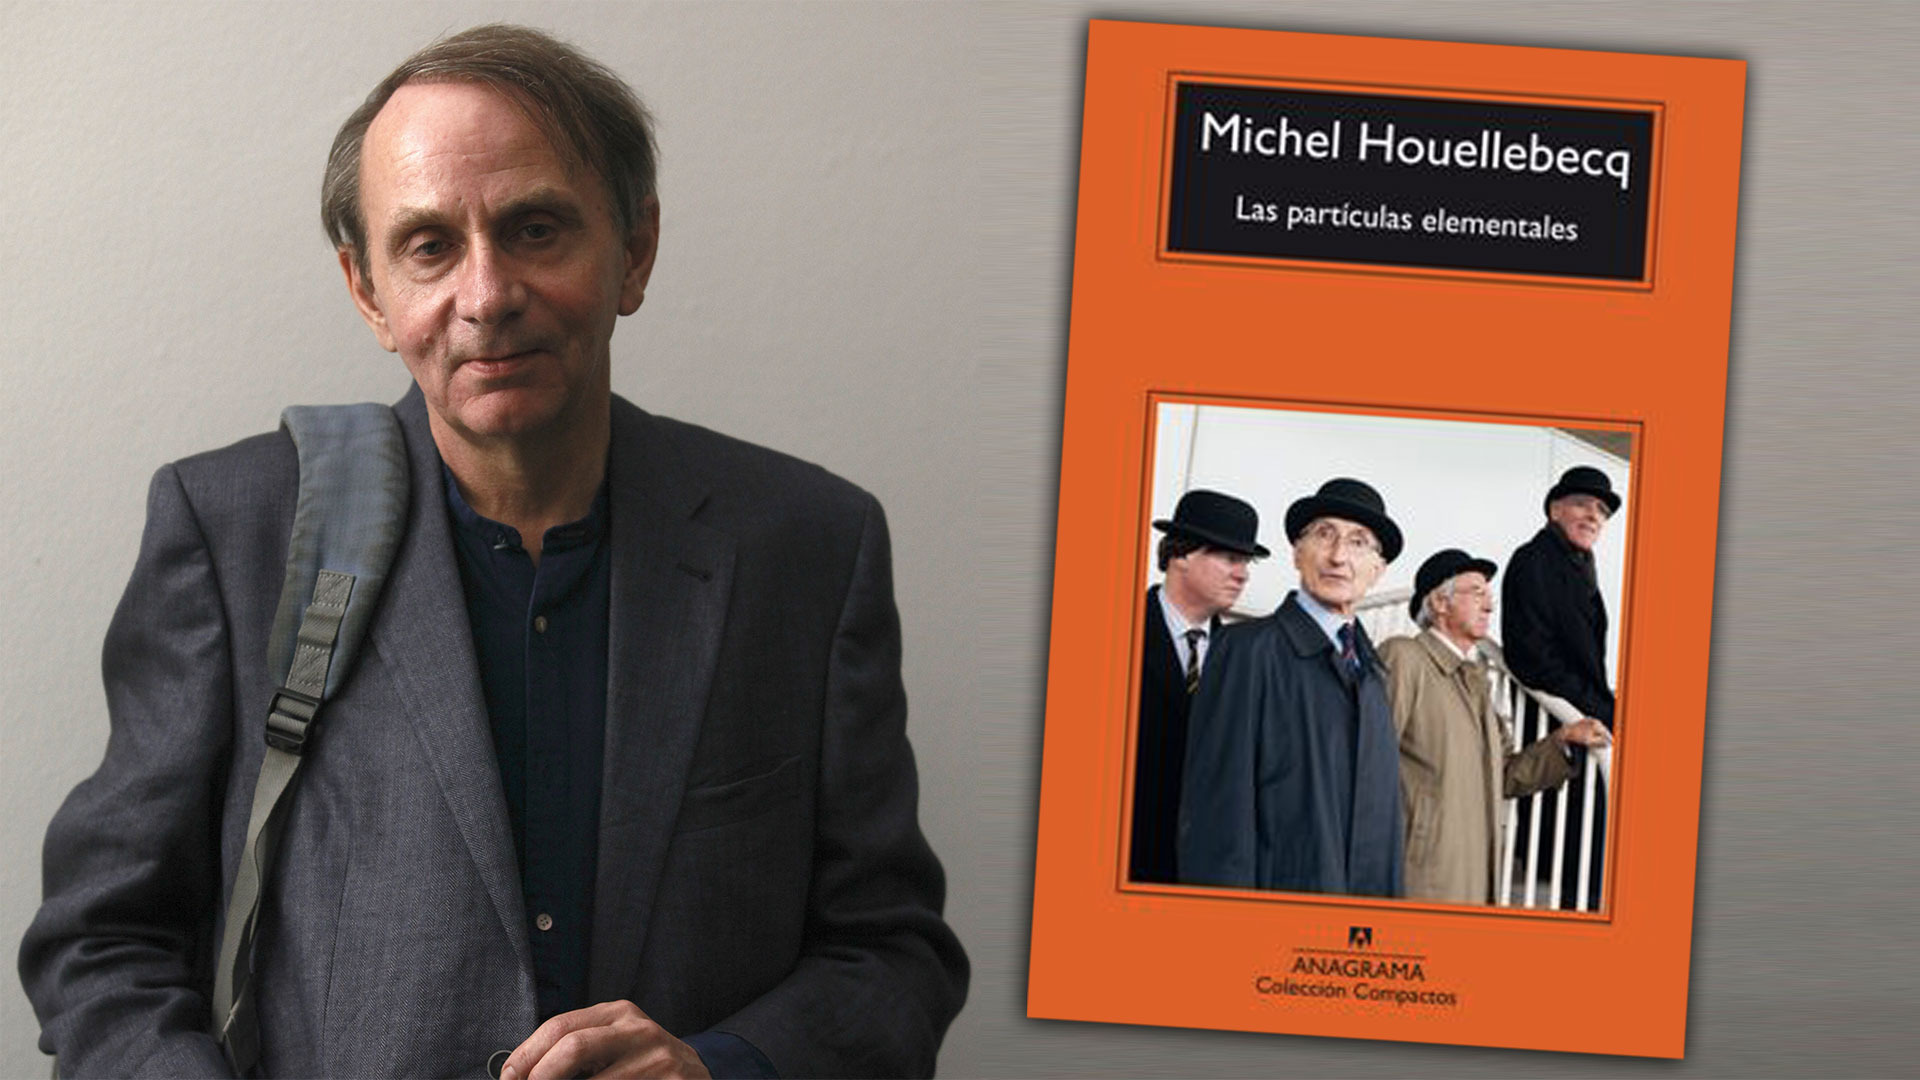 Piedra libre para Michel Houellebecq, que escribió una novela romántica y la escondió detrás de teorías sociológicas